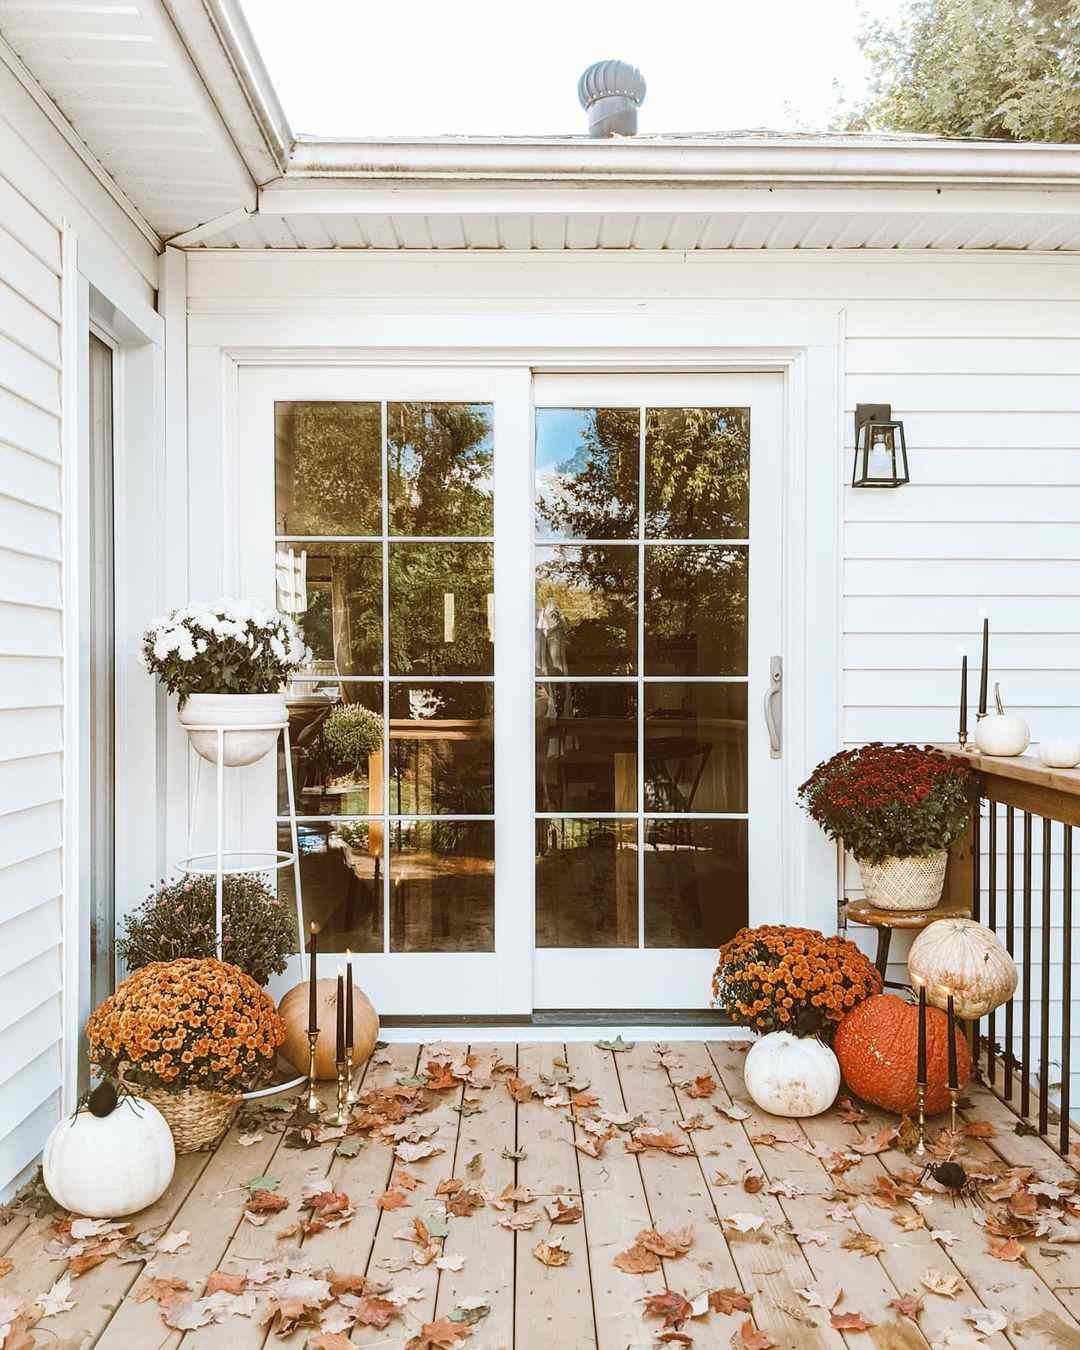 idéias de decoração de portas de outono portas de vidro